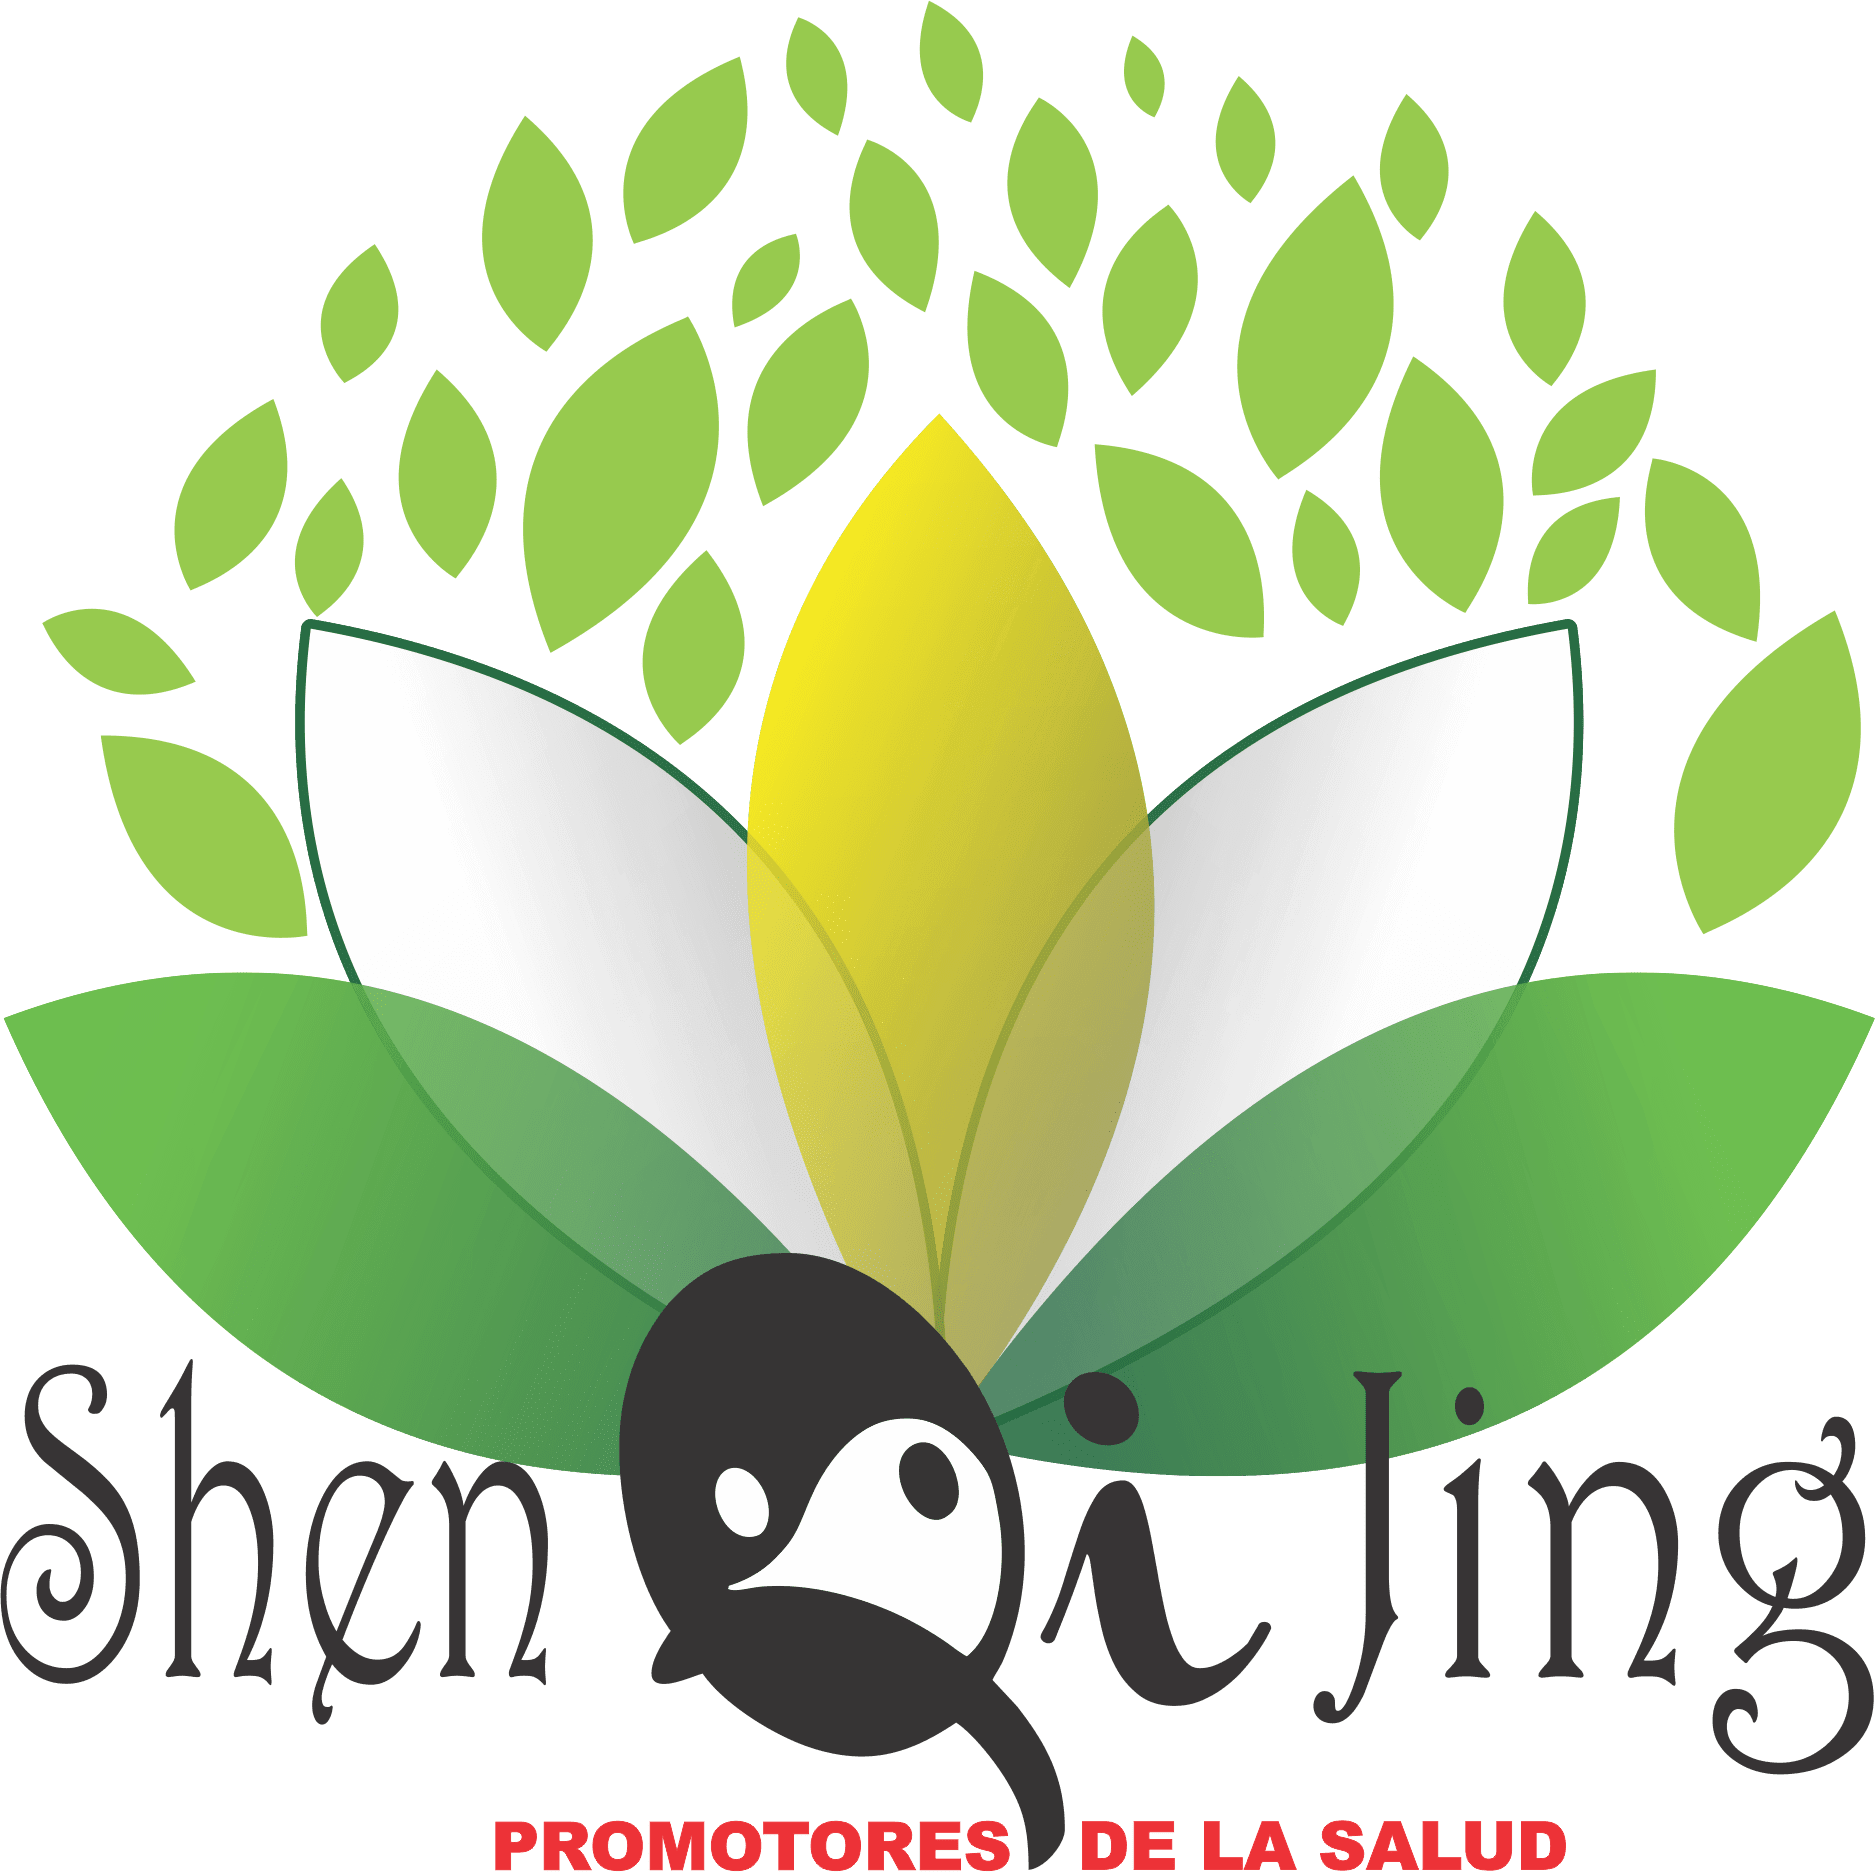 Shen Qi Jing Promotores de la Salud